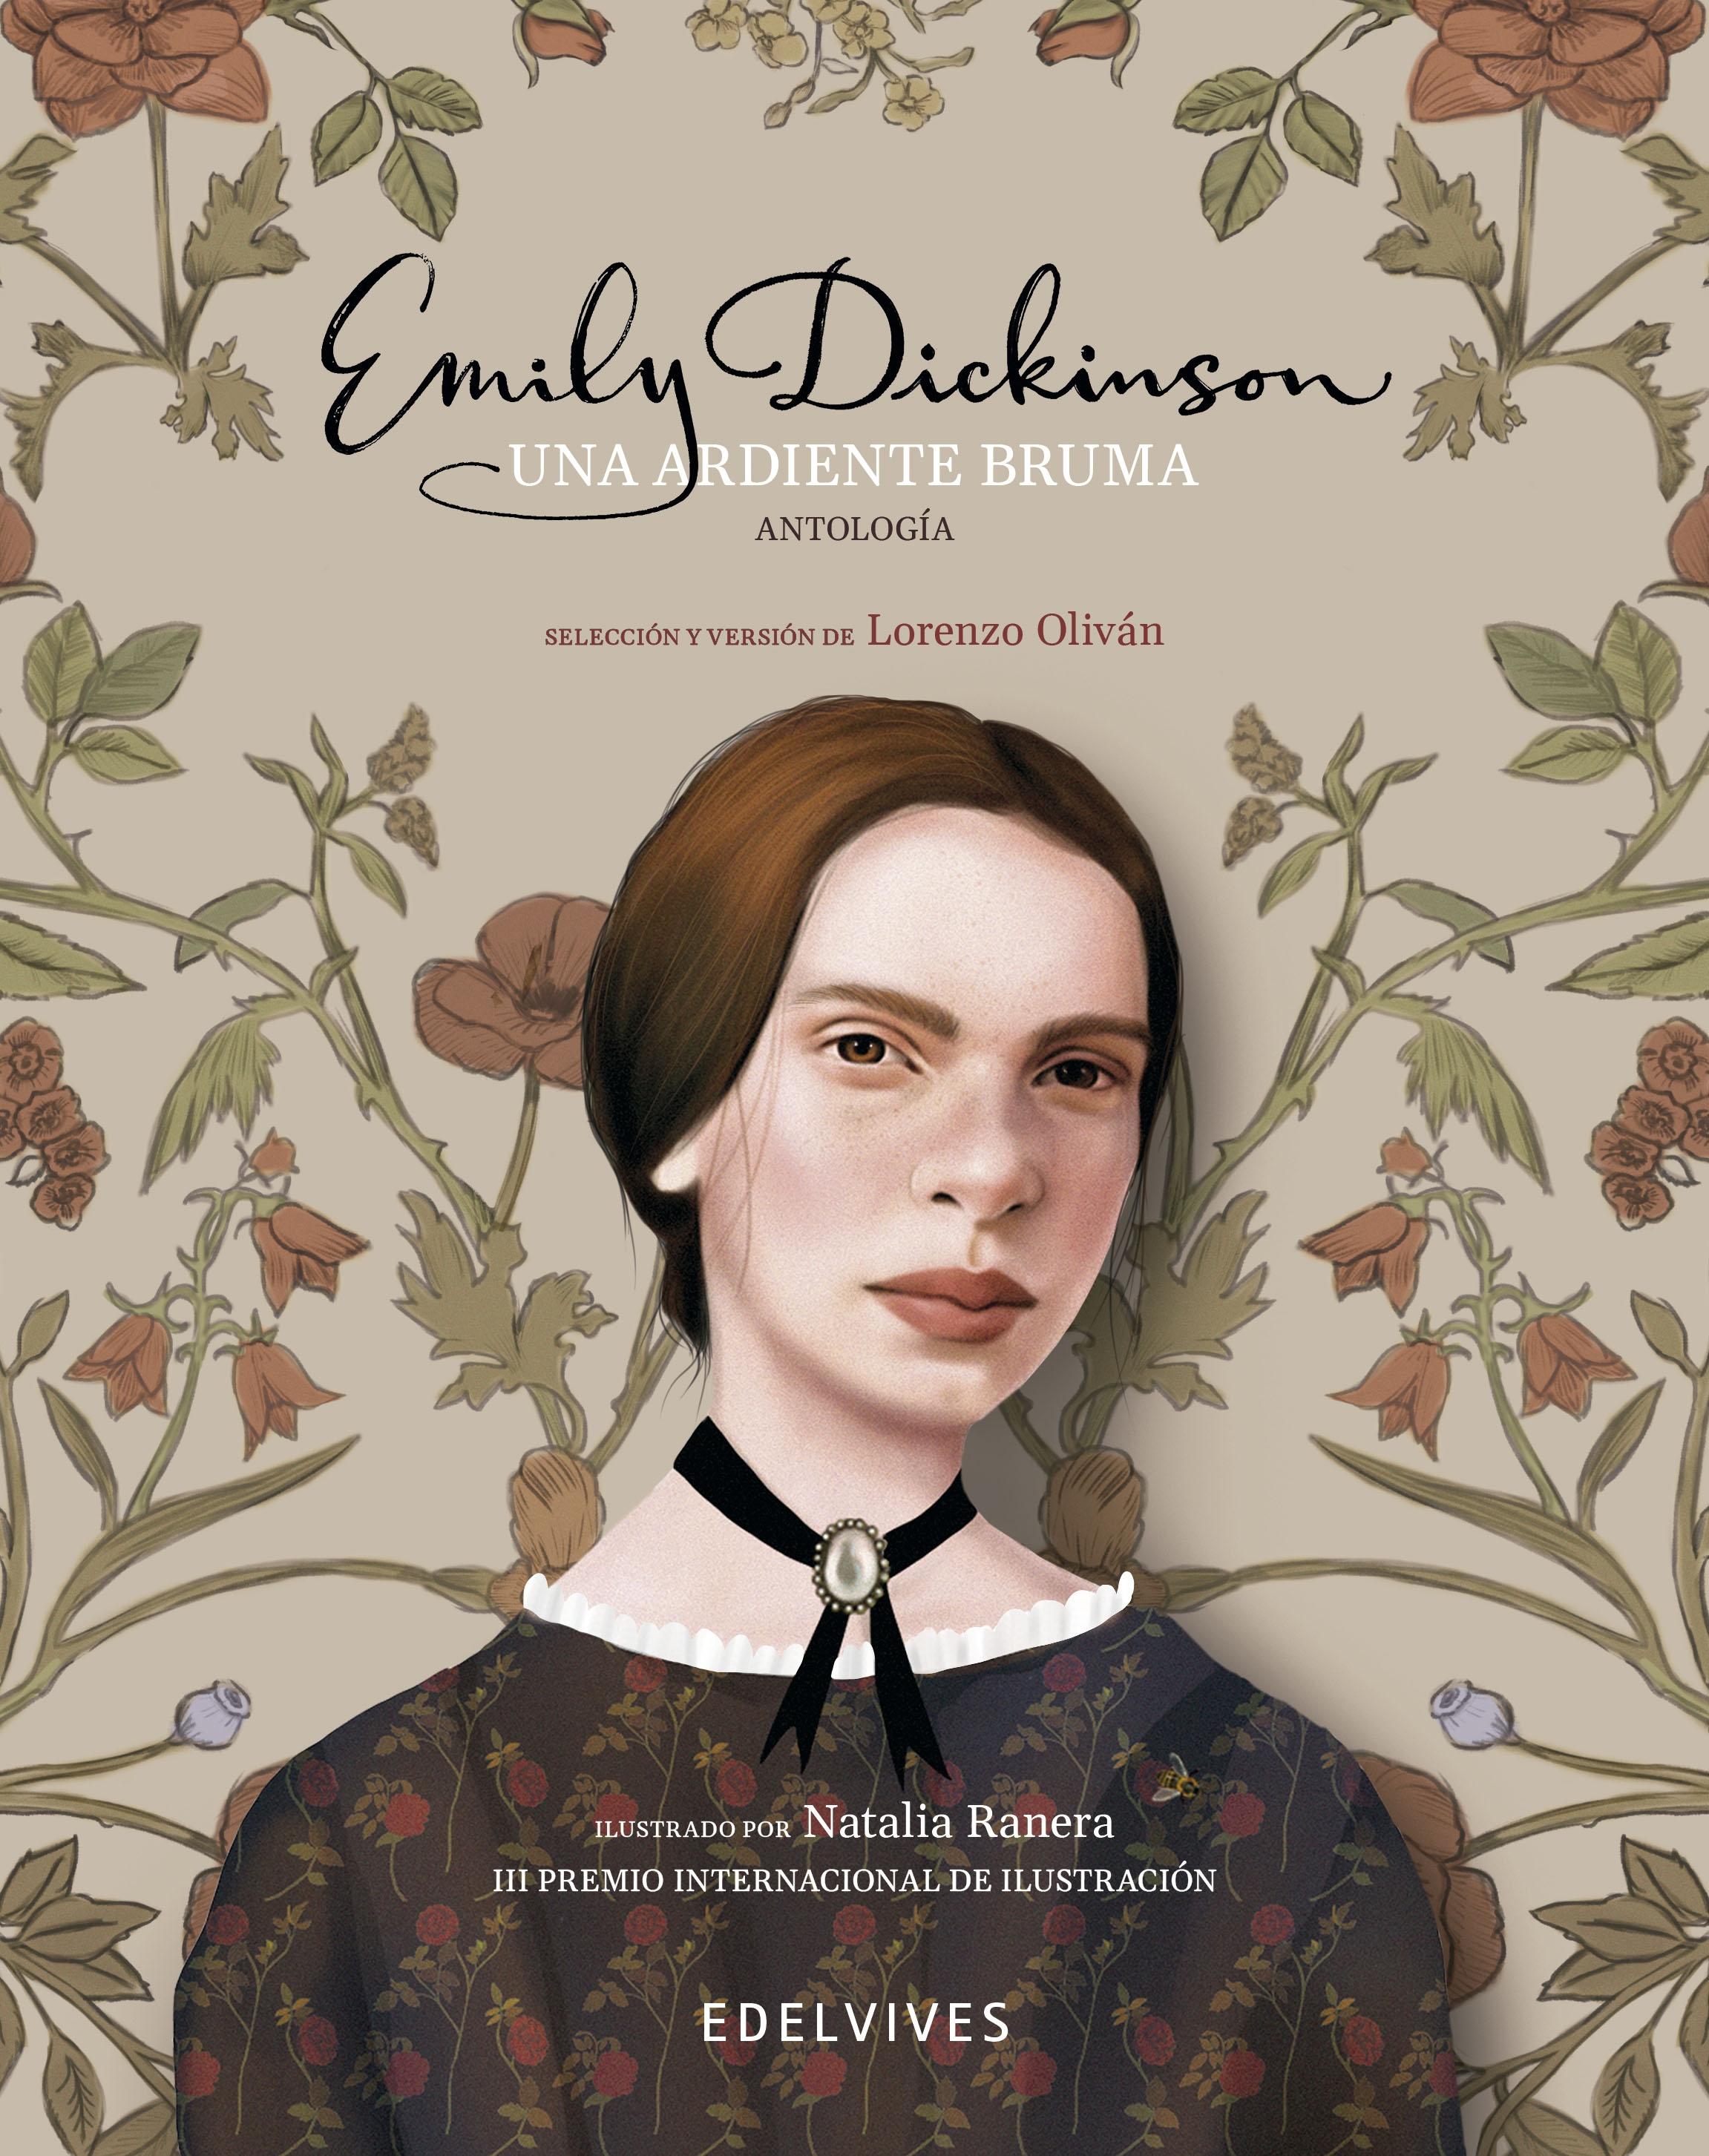 Una Ardiente Bruma "Antología de Emily Dickinson". 